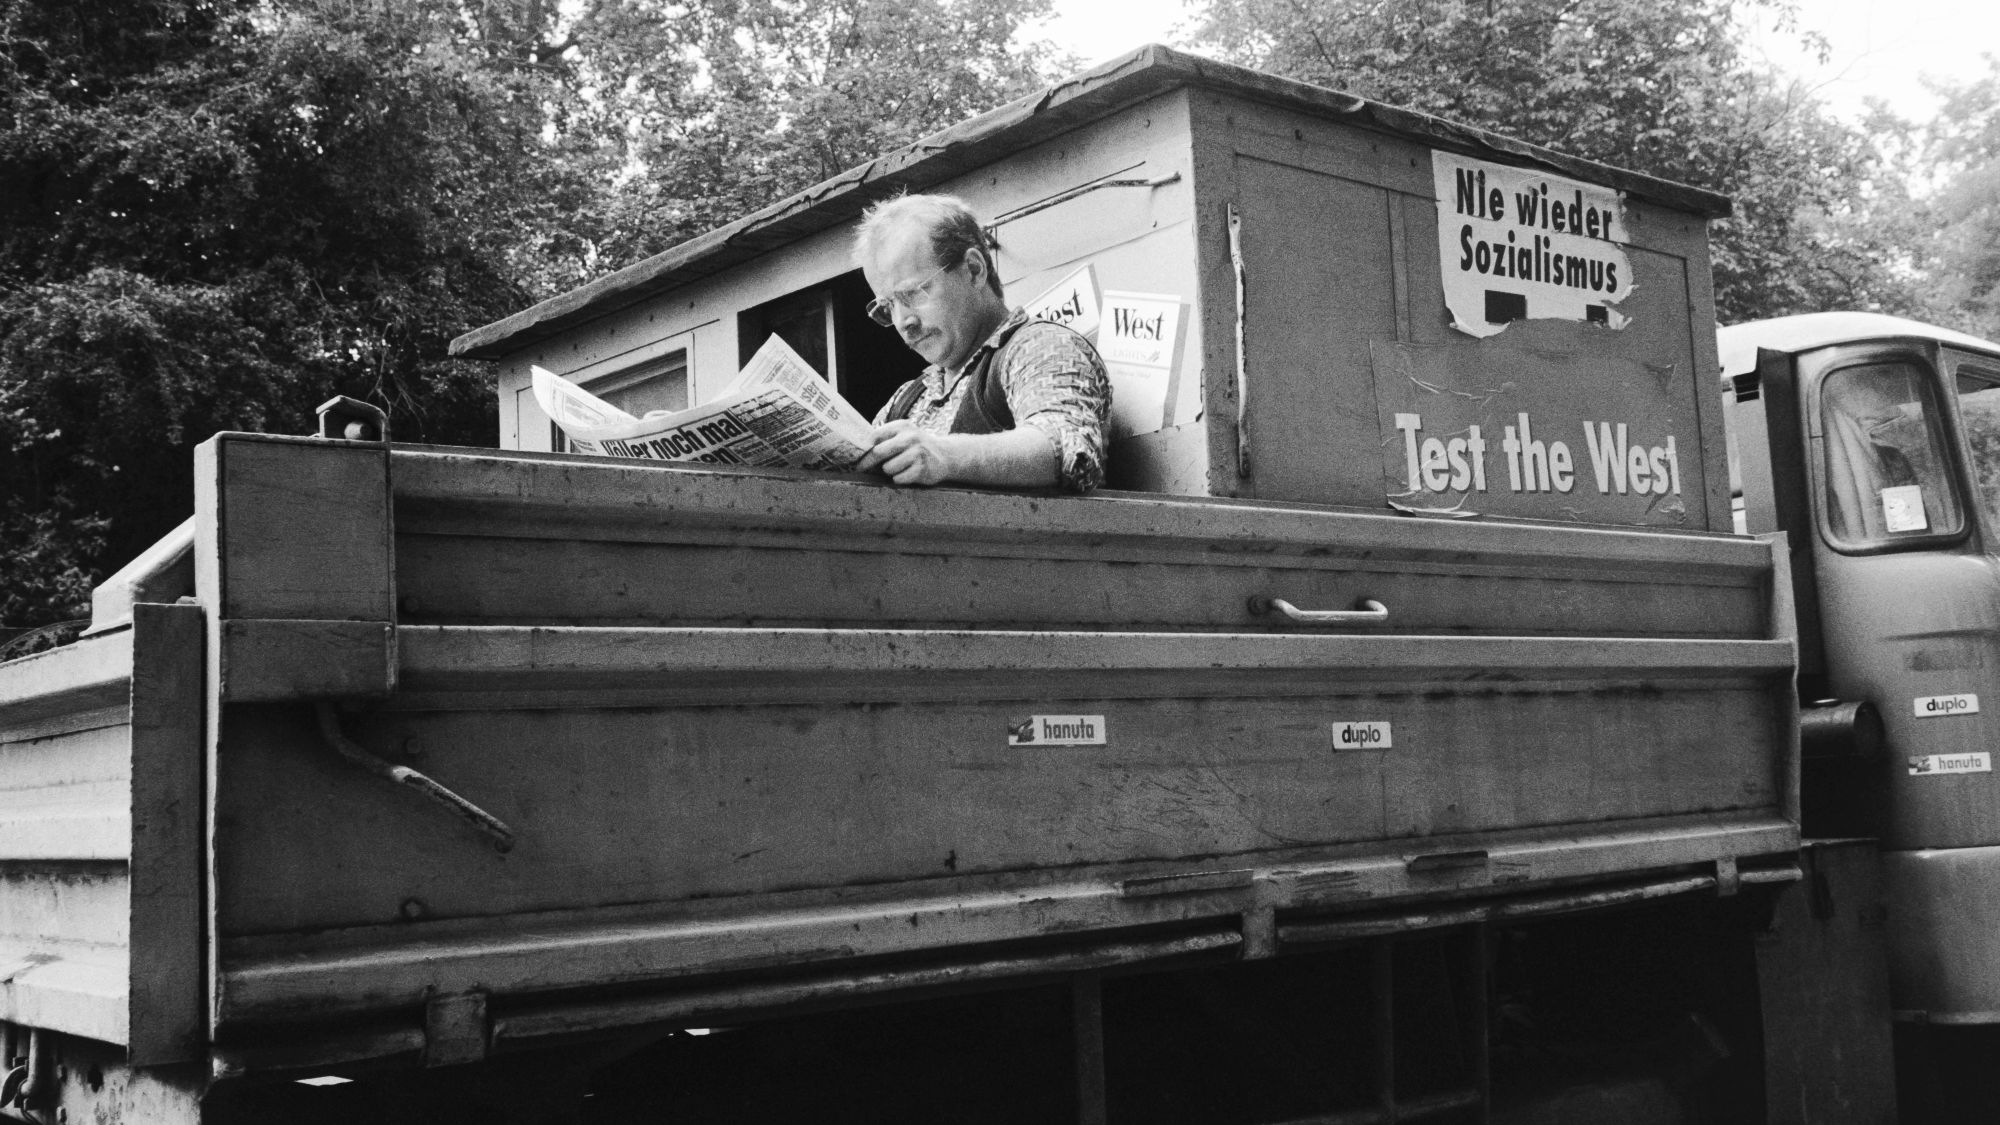 Ein Mann sitzt auf der Ladefläche eins Barkas und liest Zeitung. Auf dem Barkas Aufkleber mit Nie wieder Sozialismus und Test the West.